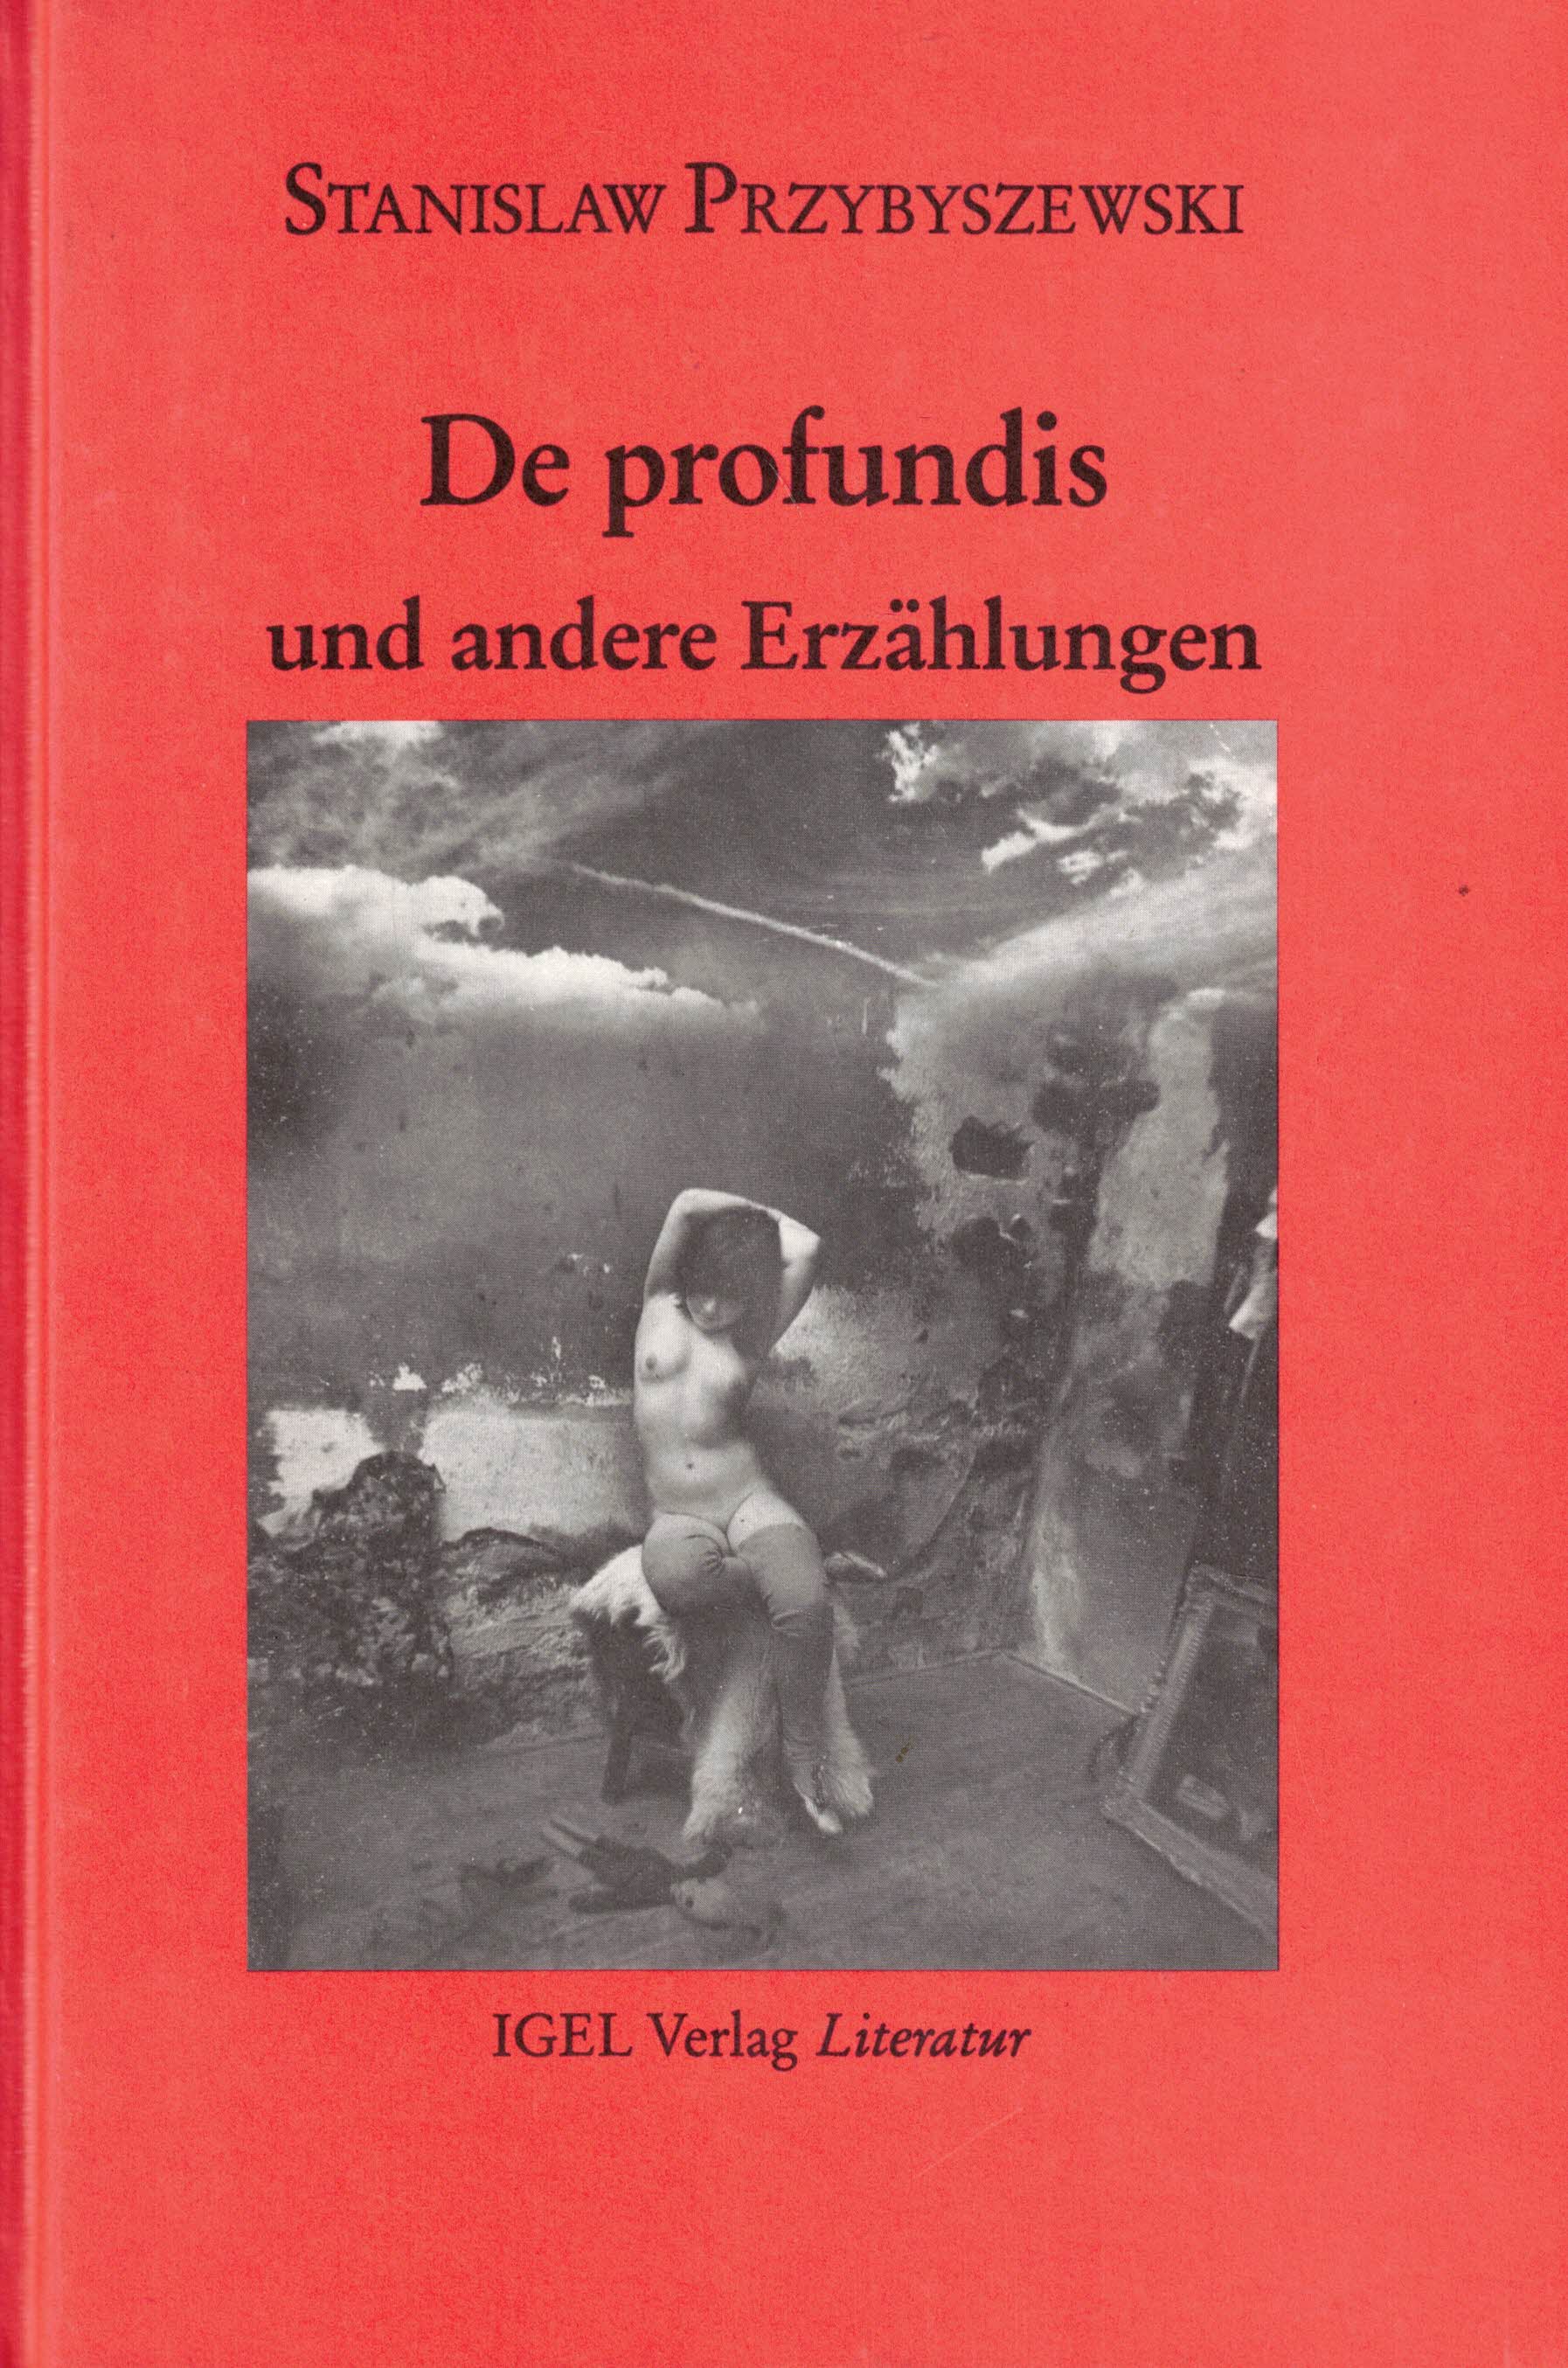 De profundis und andere Erzählungen (Studienausgabe: Werke, Aufzeichnungen und ausgewählte Briefe. Band 1 (Erzählungen I)) - Przybyszewski, Stanislaw